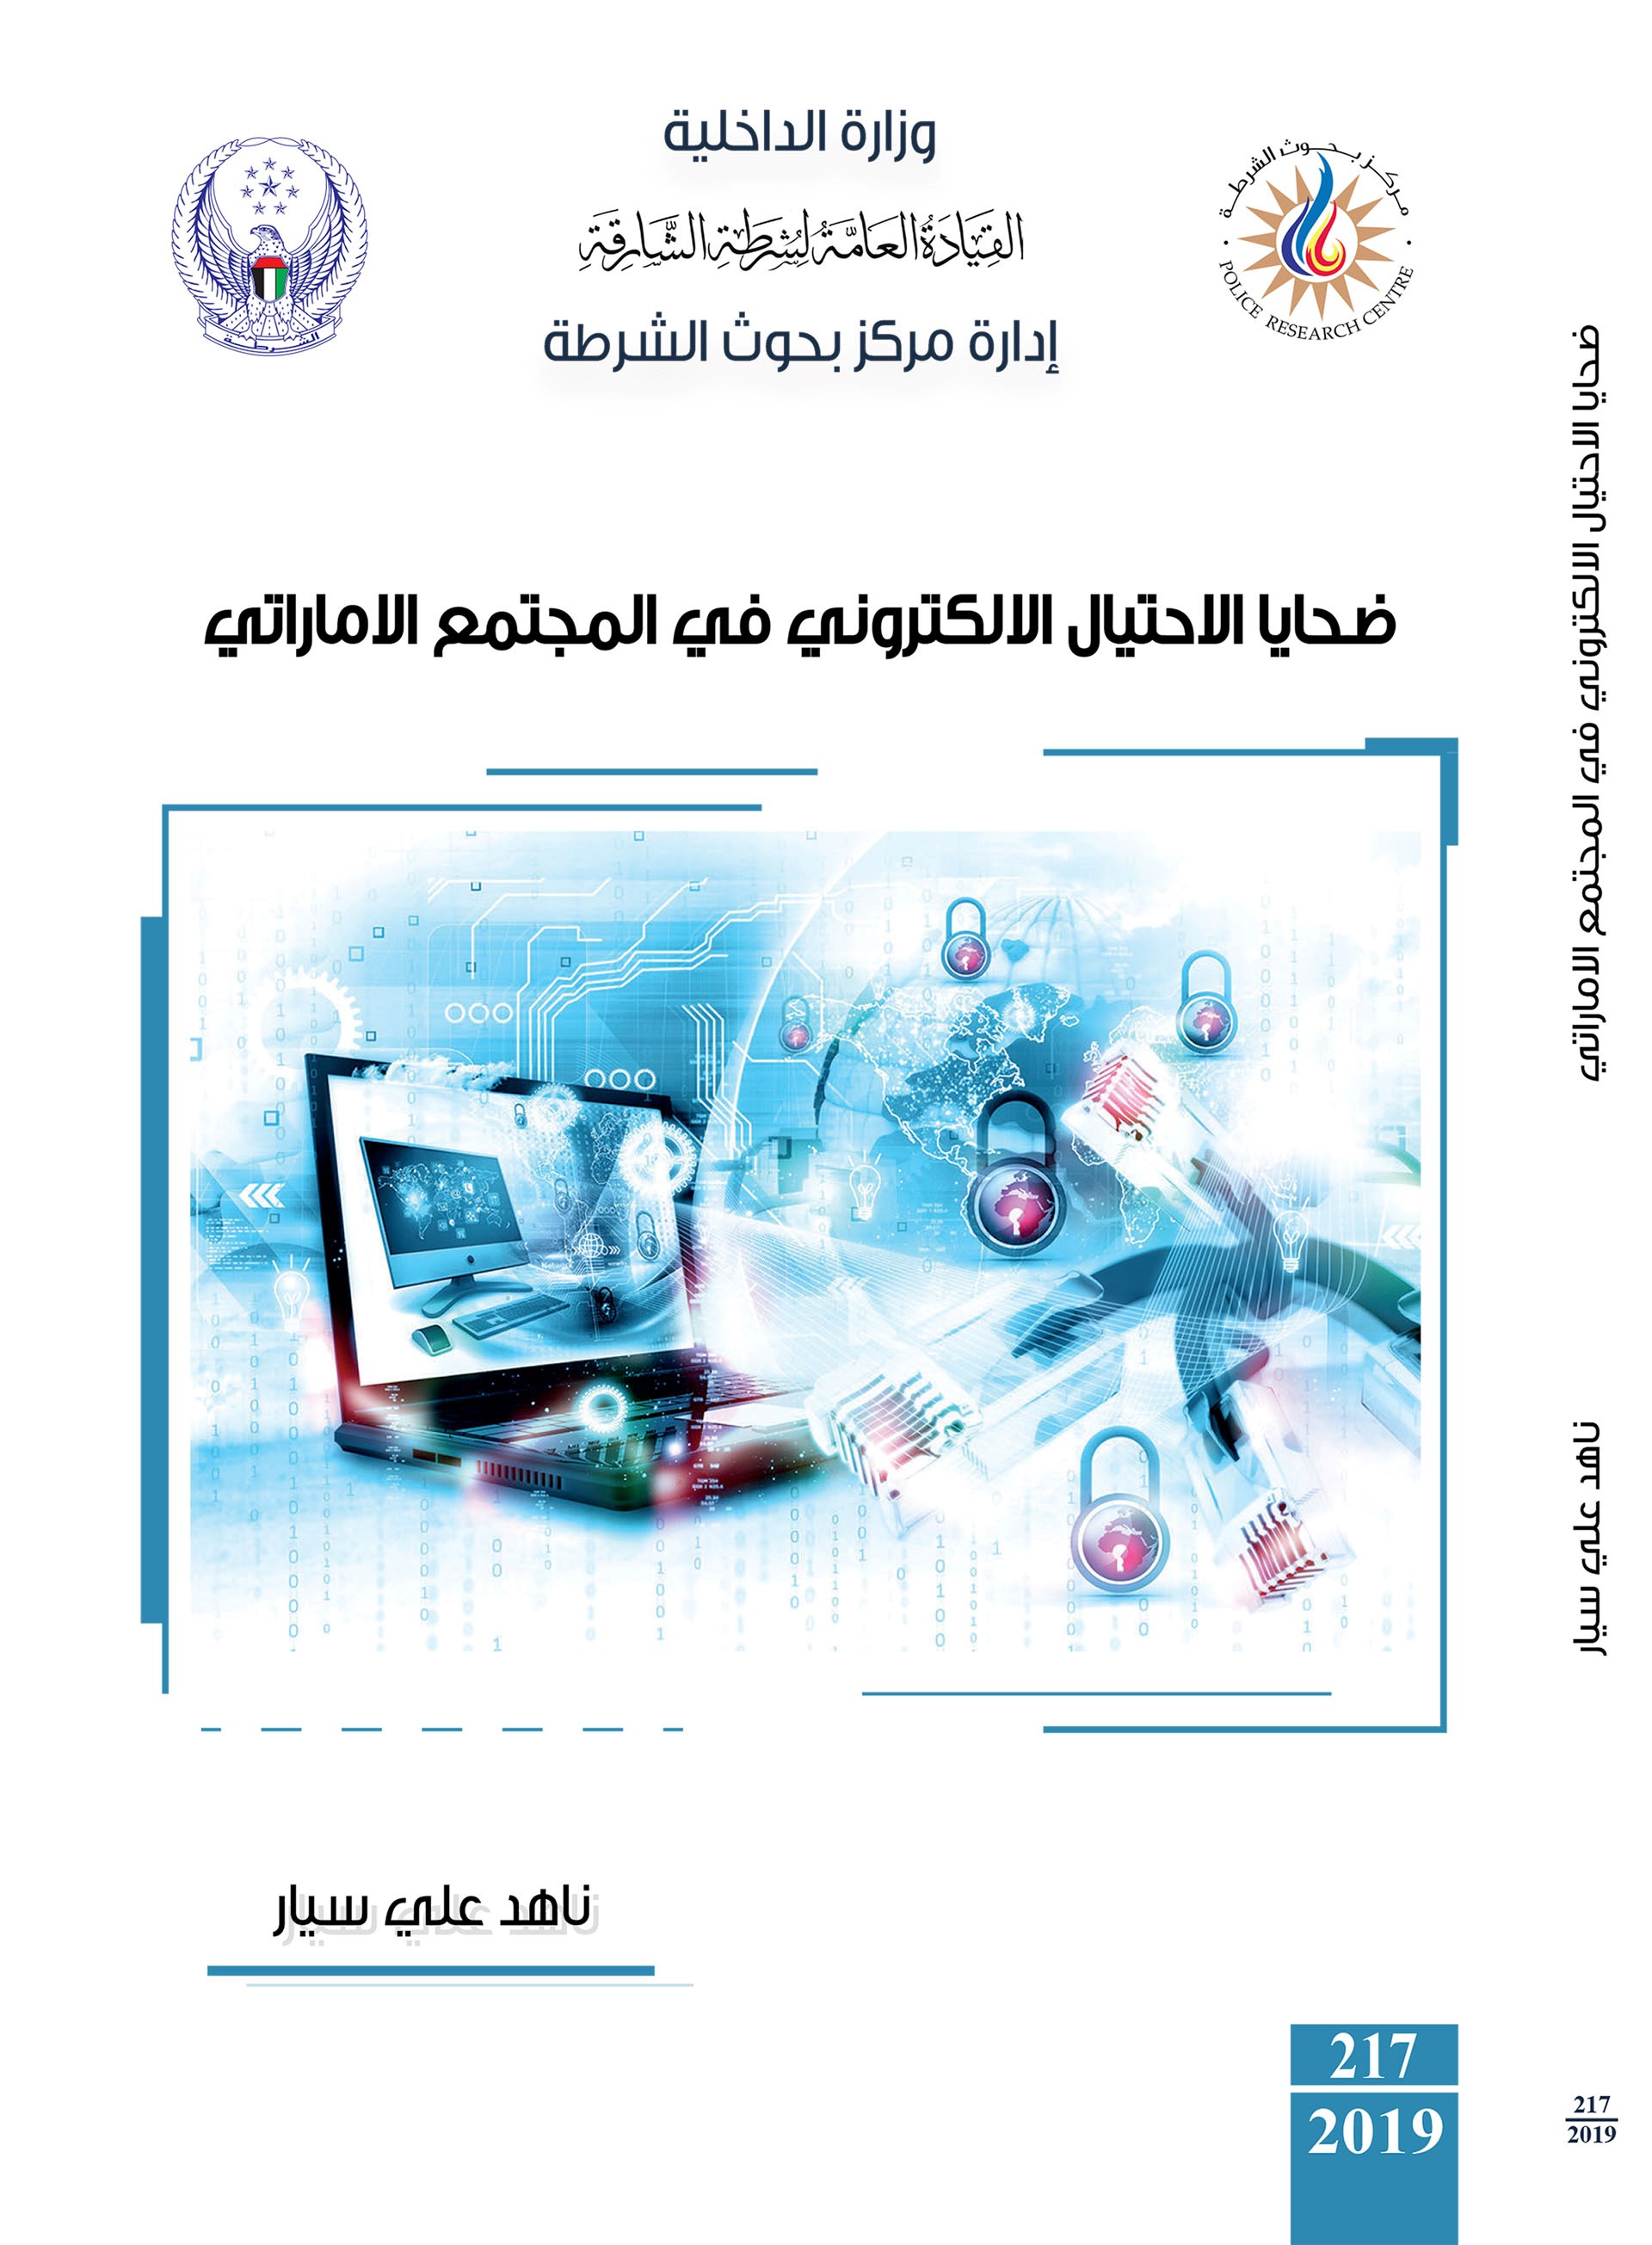 ضحايا الإحتيال الإلكتروني في المجتمع الإماراتي